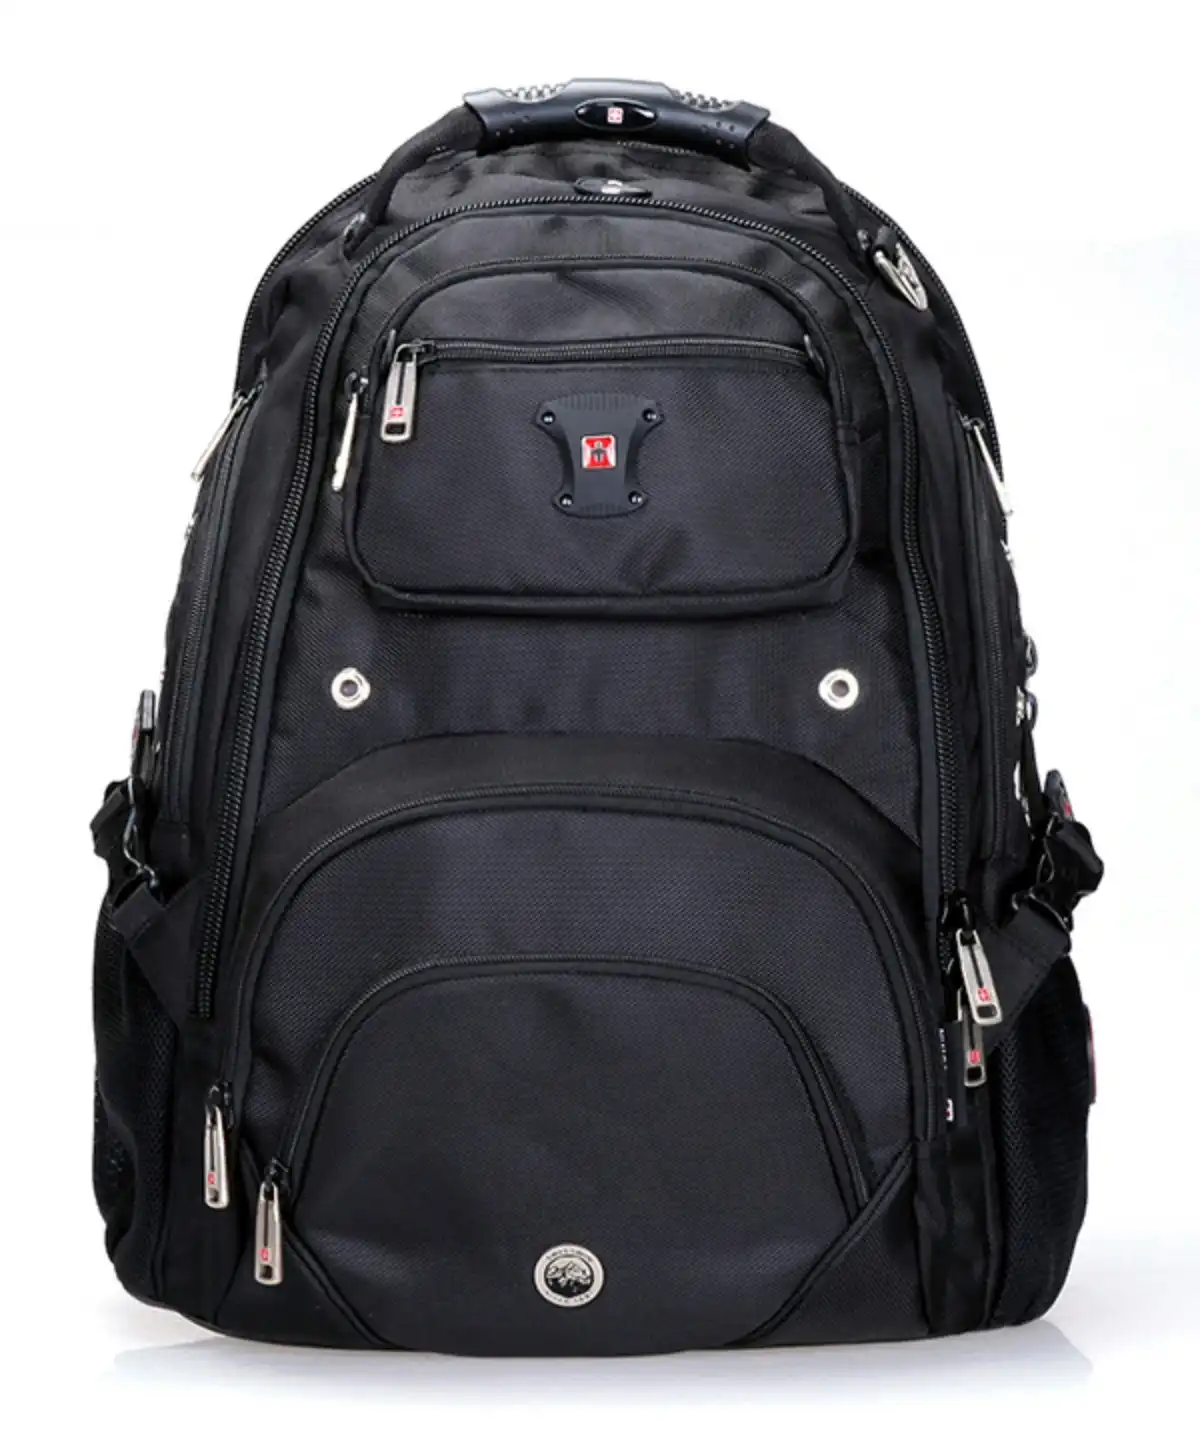 Swisswin Swiss waterproof 17" laptop Backpack School backpack Travel Backpack SW9903